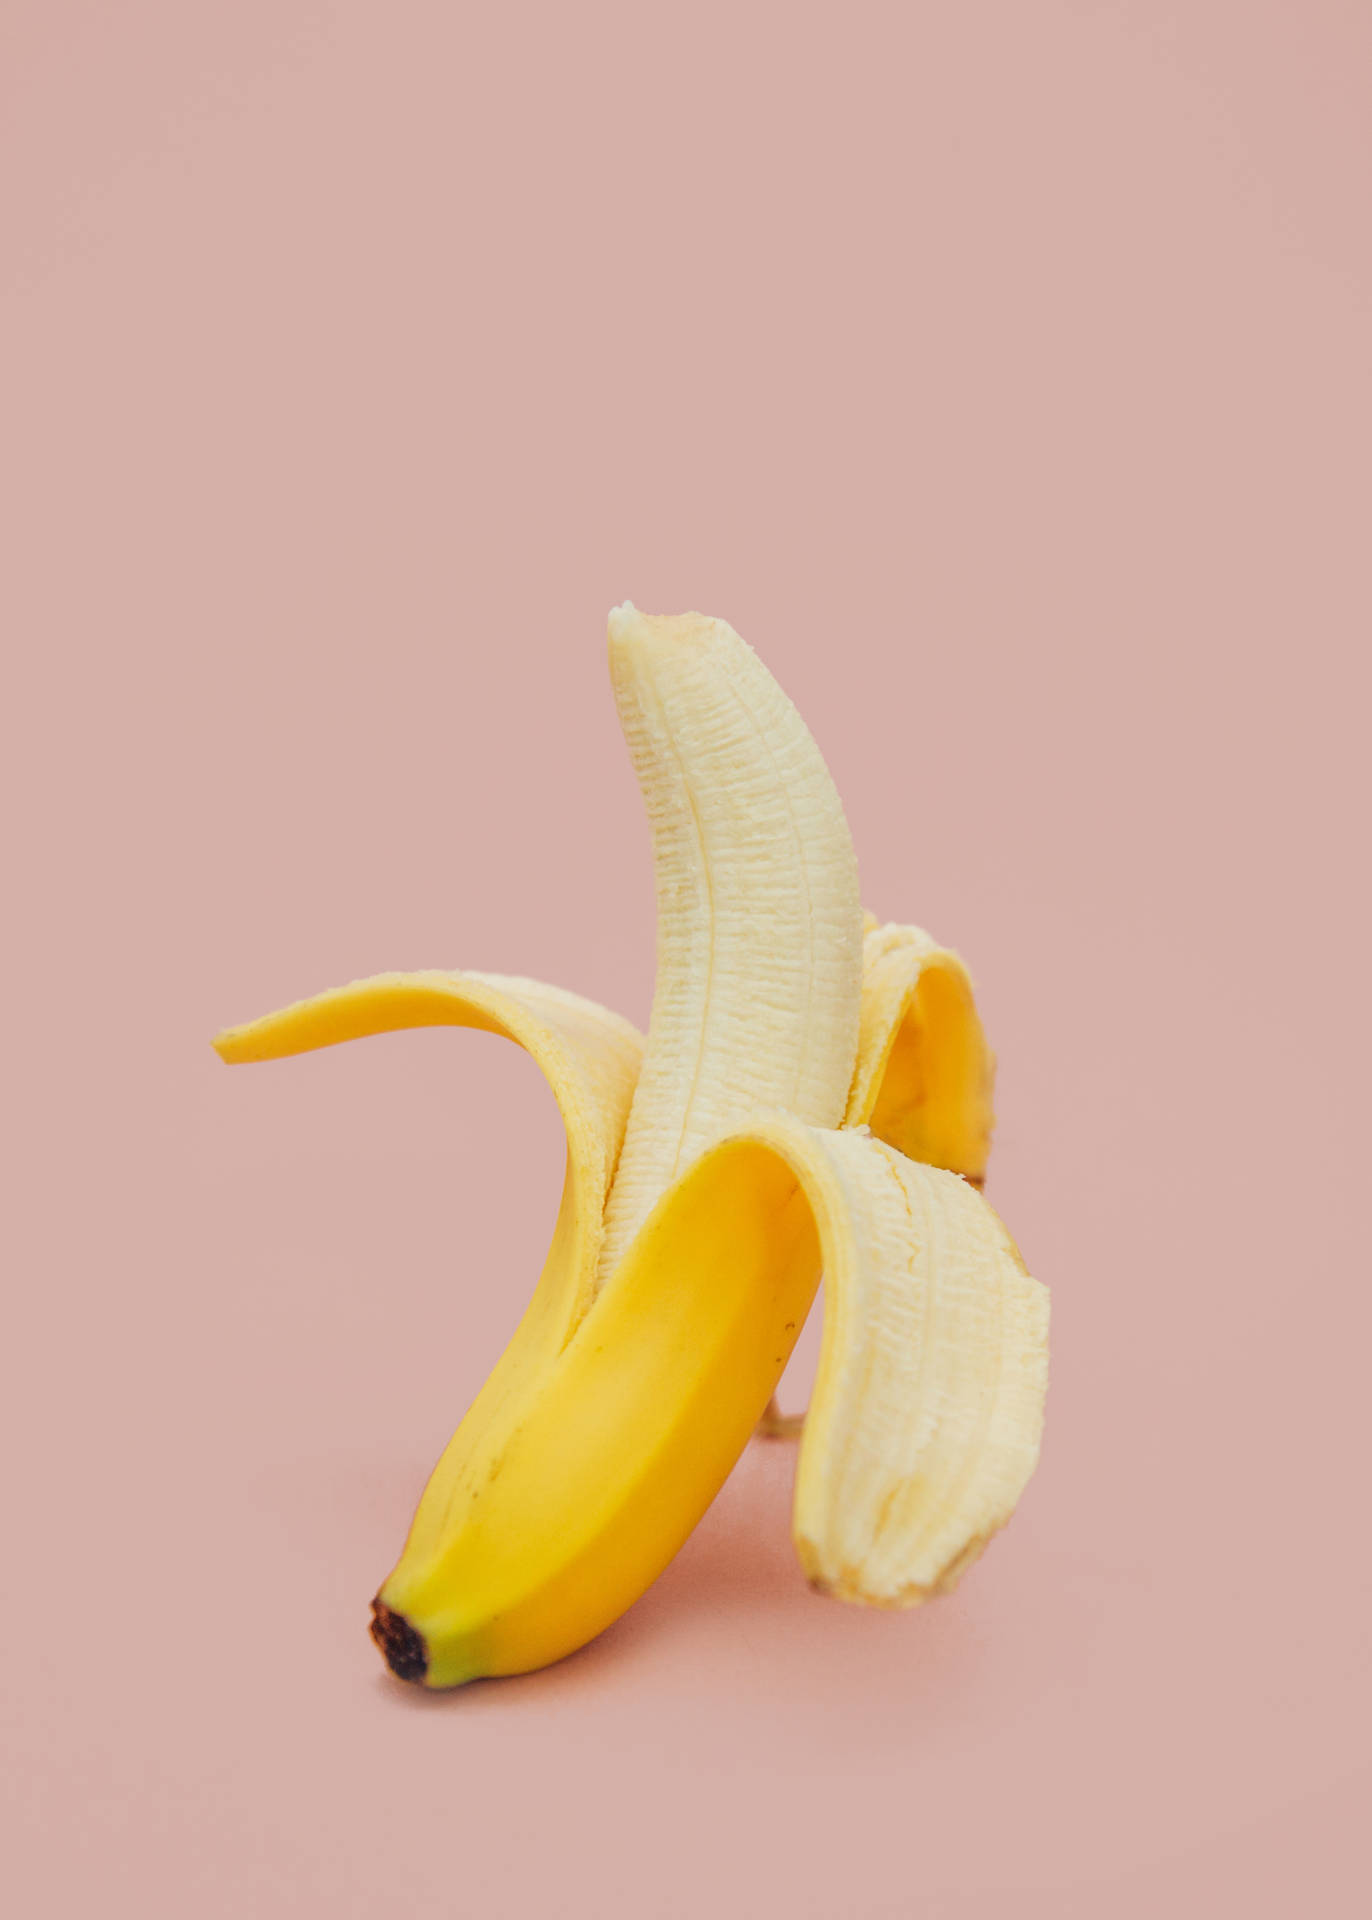 Peeled Banana Fruit Background